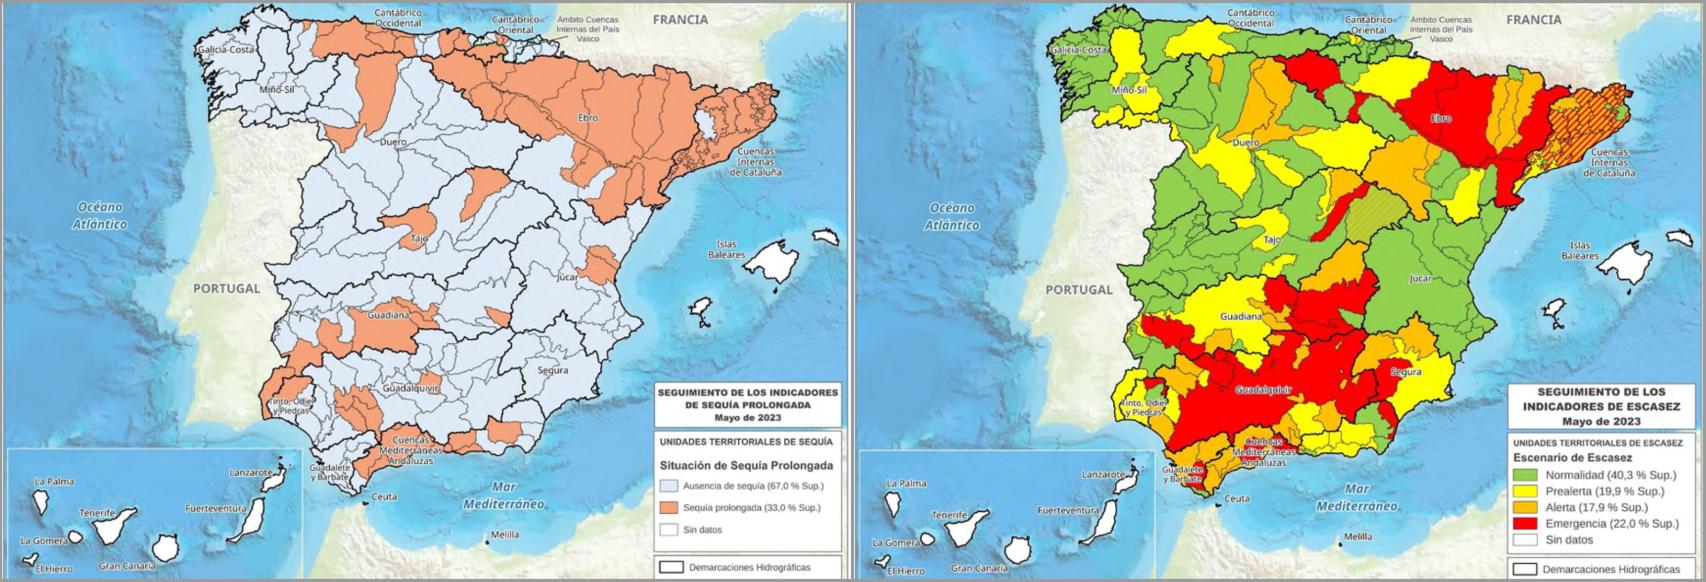 Mapa de la sequía prolongada (izq) y la escasez coyuntural (dcha) en España.